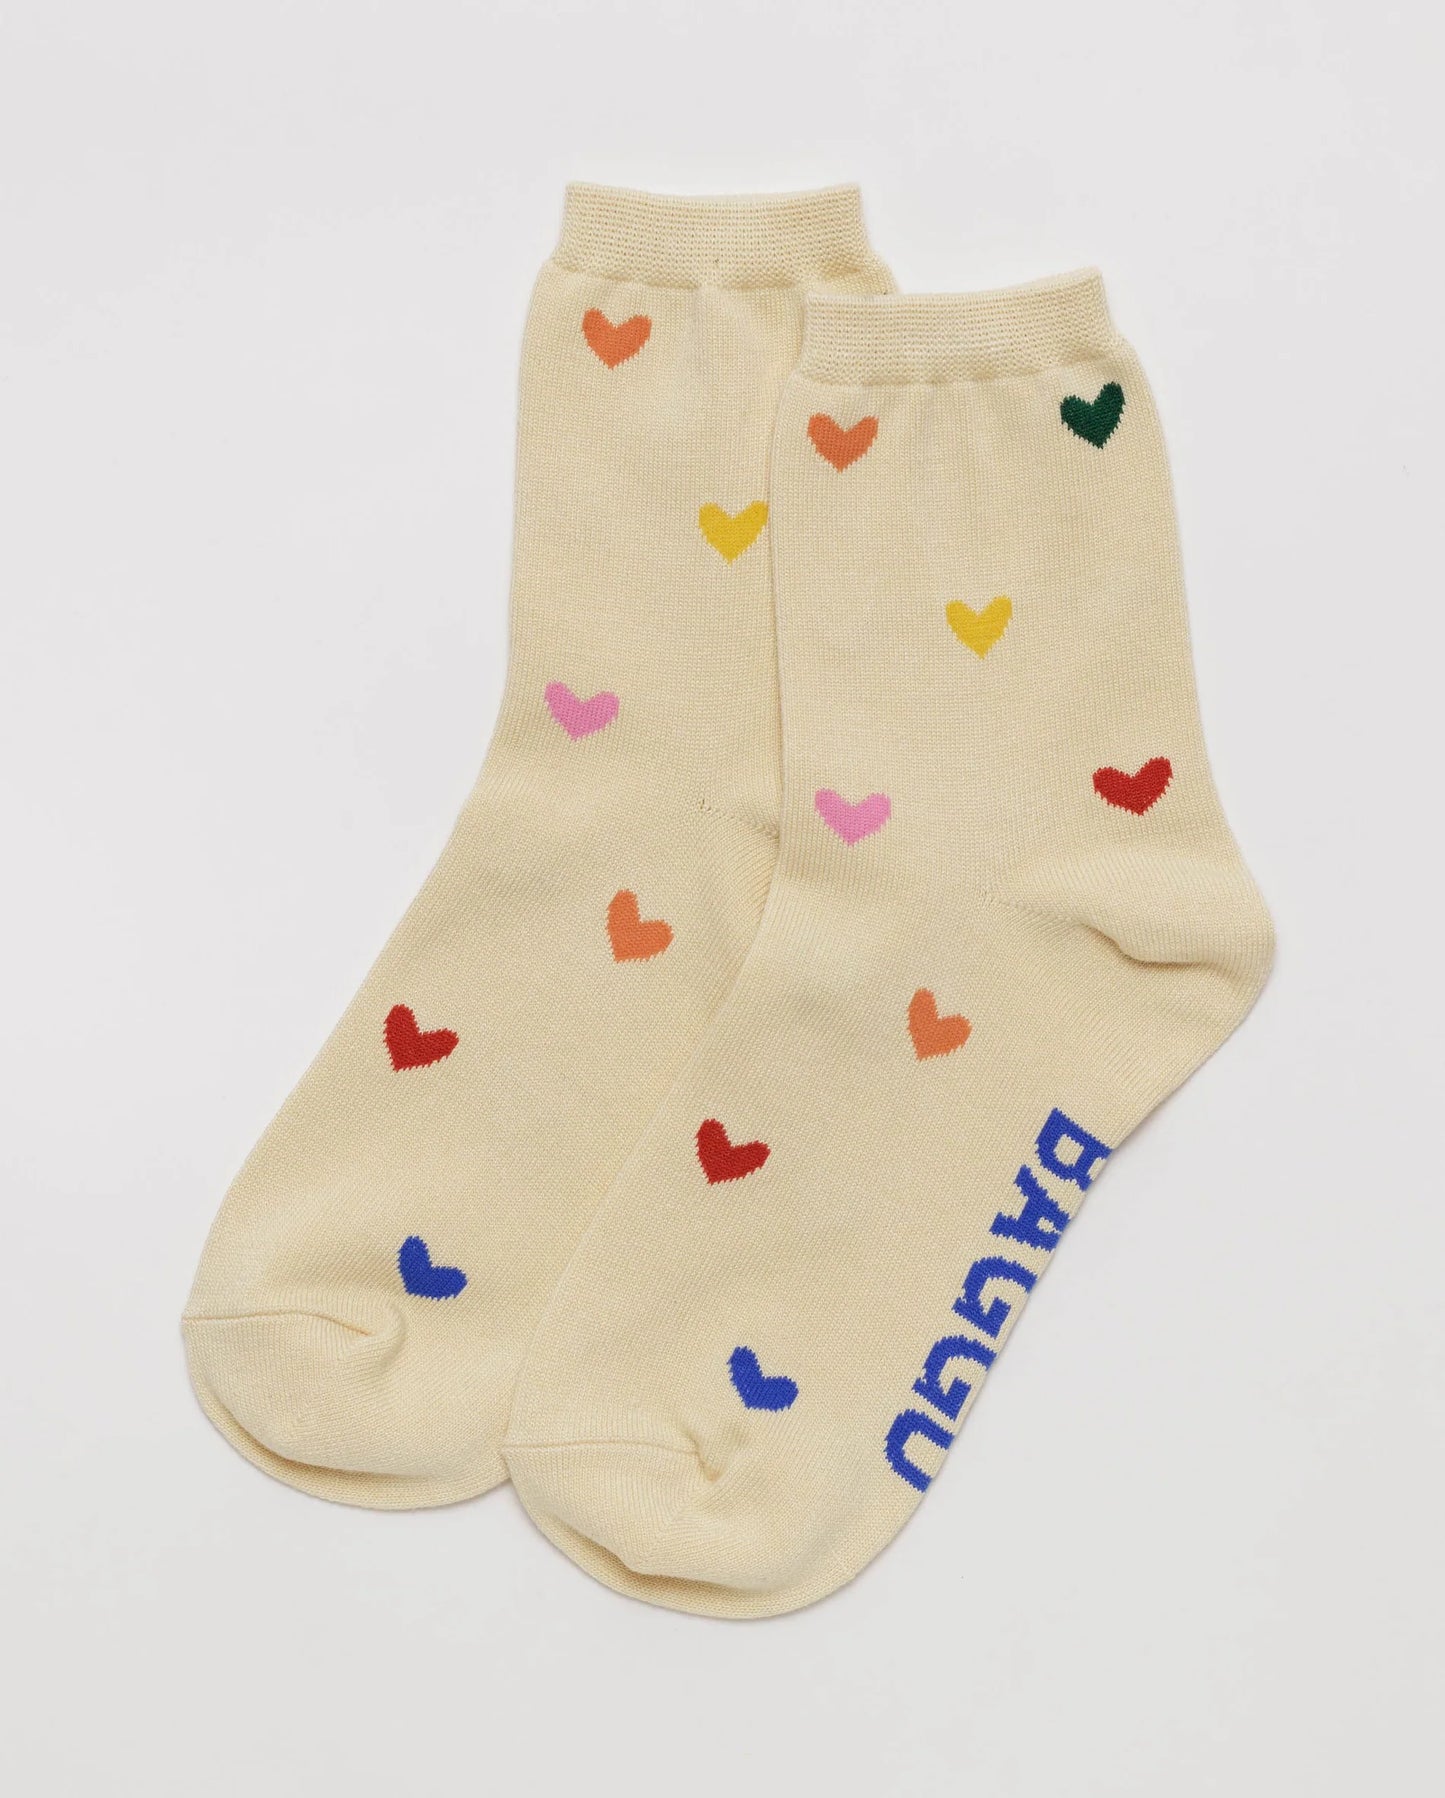 baggu heart socks - hearts pattern